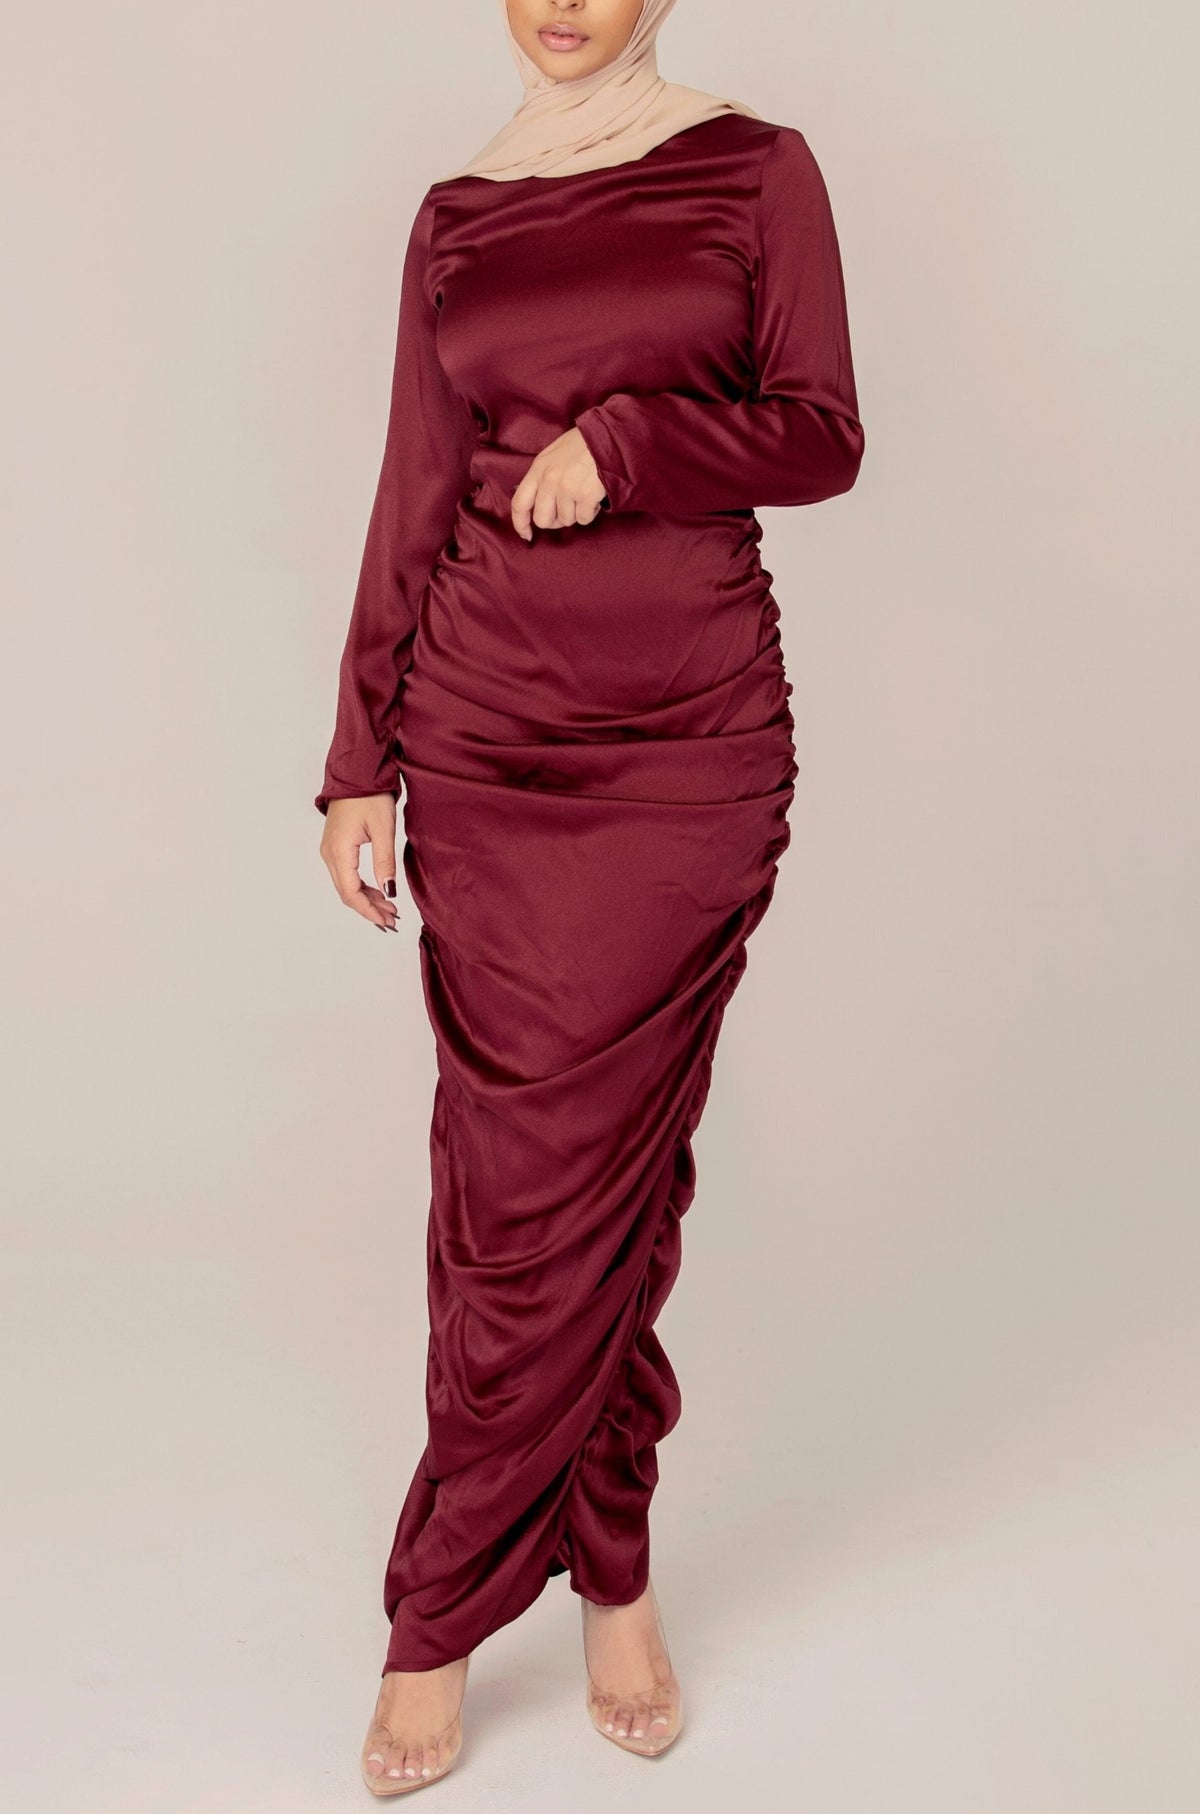 Satin Rouched Maxi Dress Veiled Collection 2XL Regular 